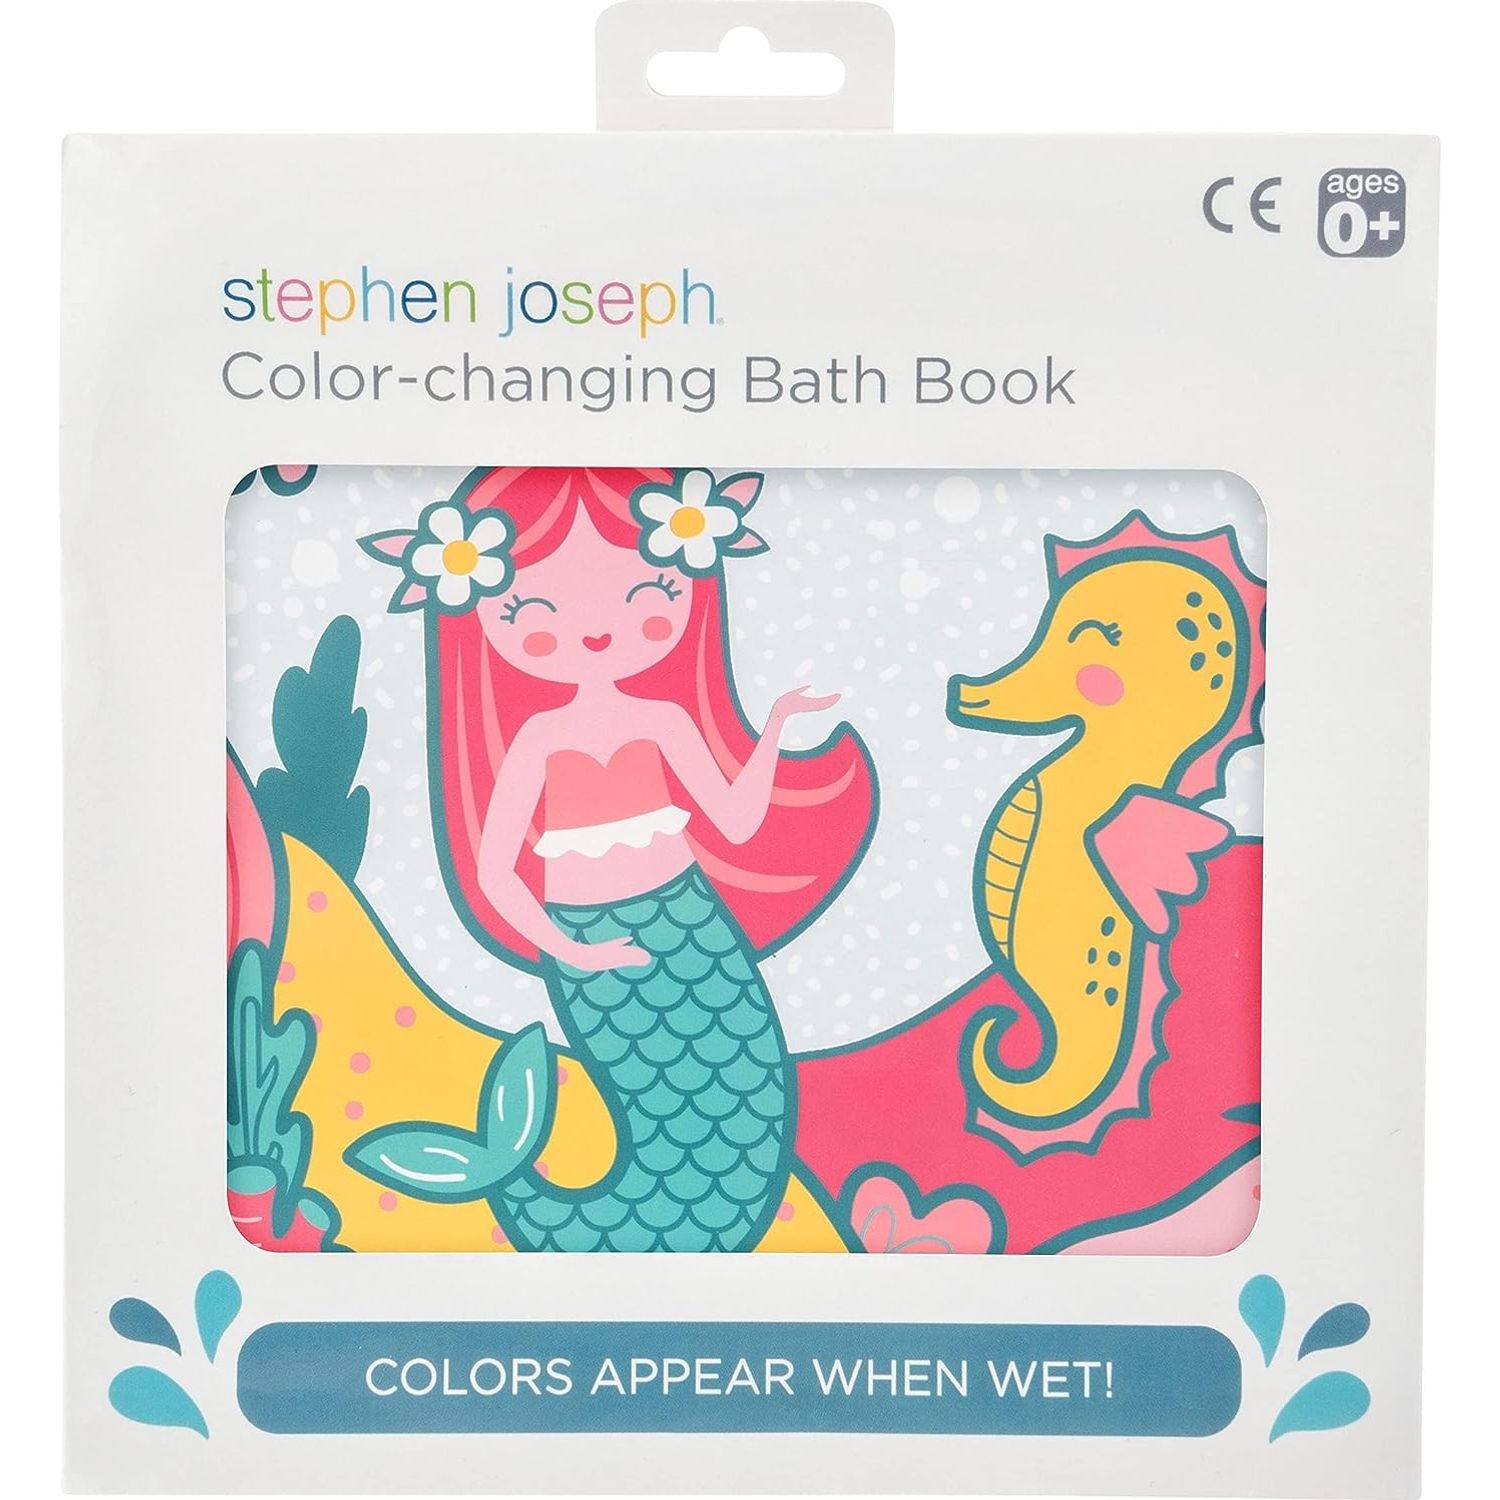 ستيفن جوزيف ، كتاب وقت الاستحمام المتغير بالألوان العائمة ، ألعاب حمام الأطفال